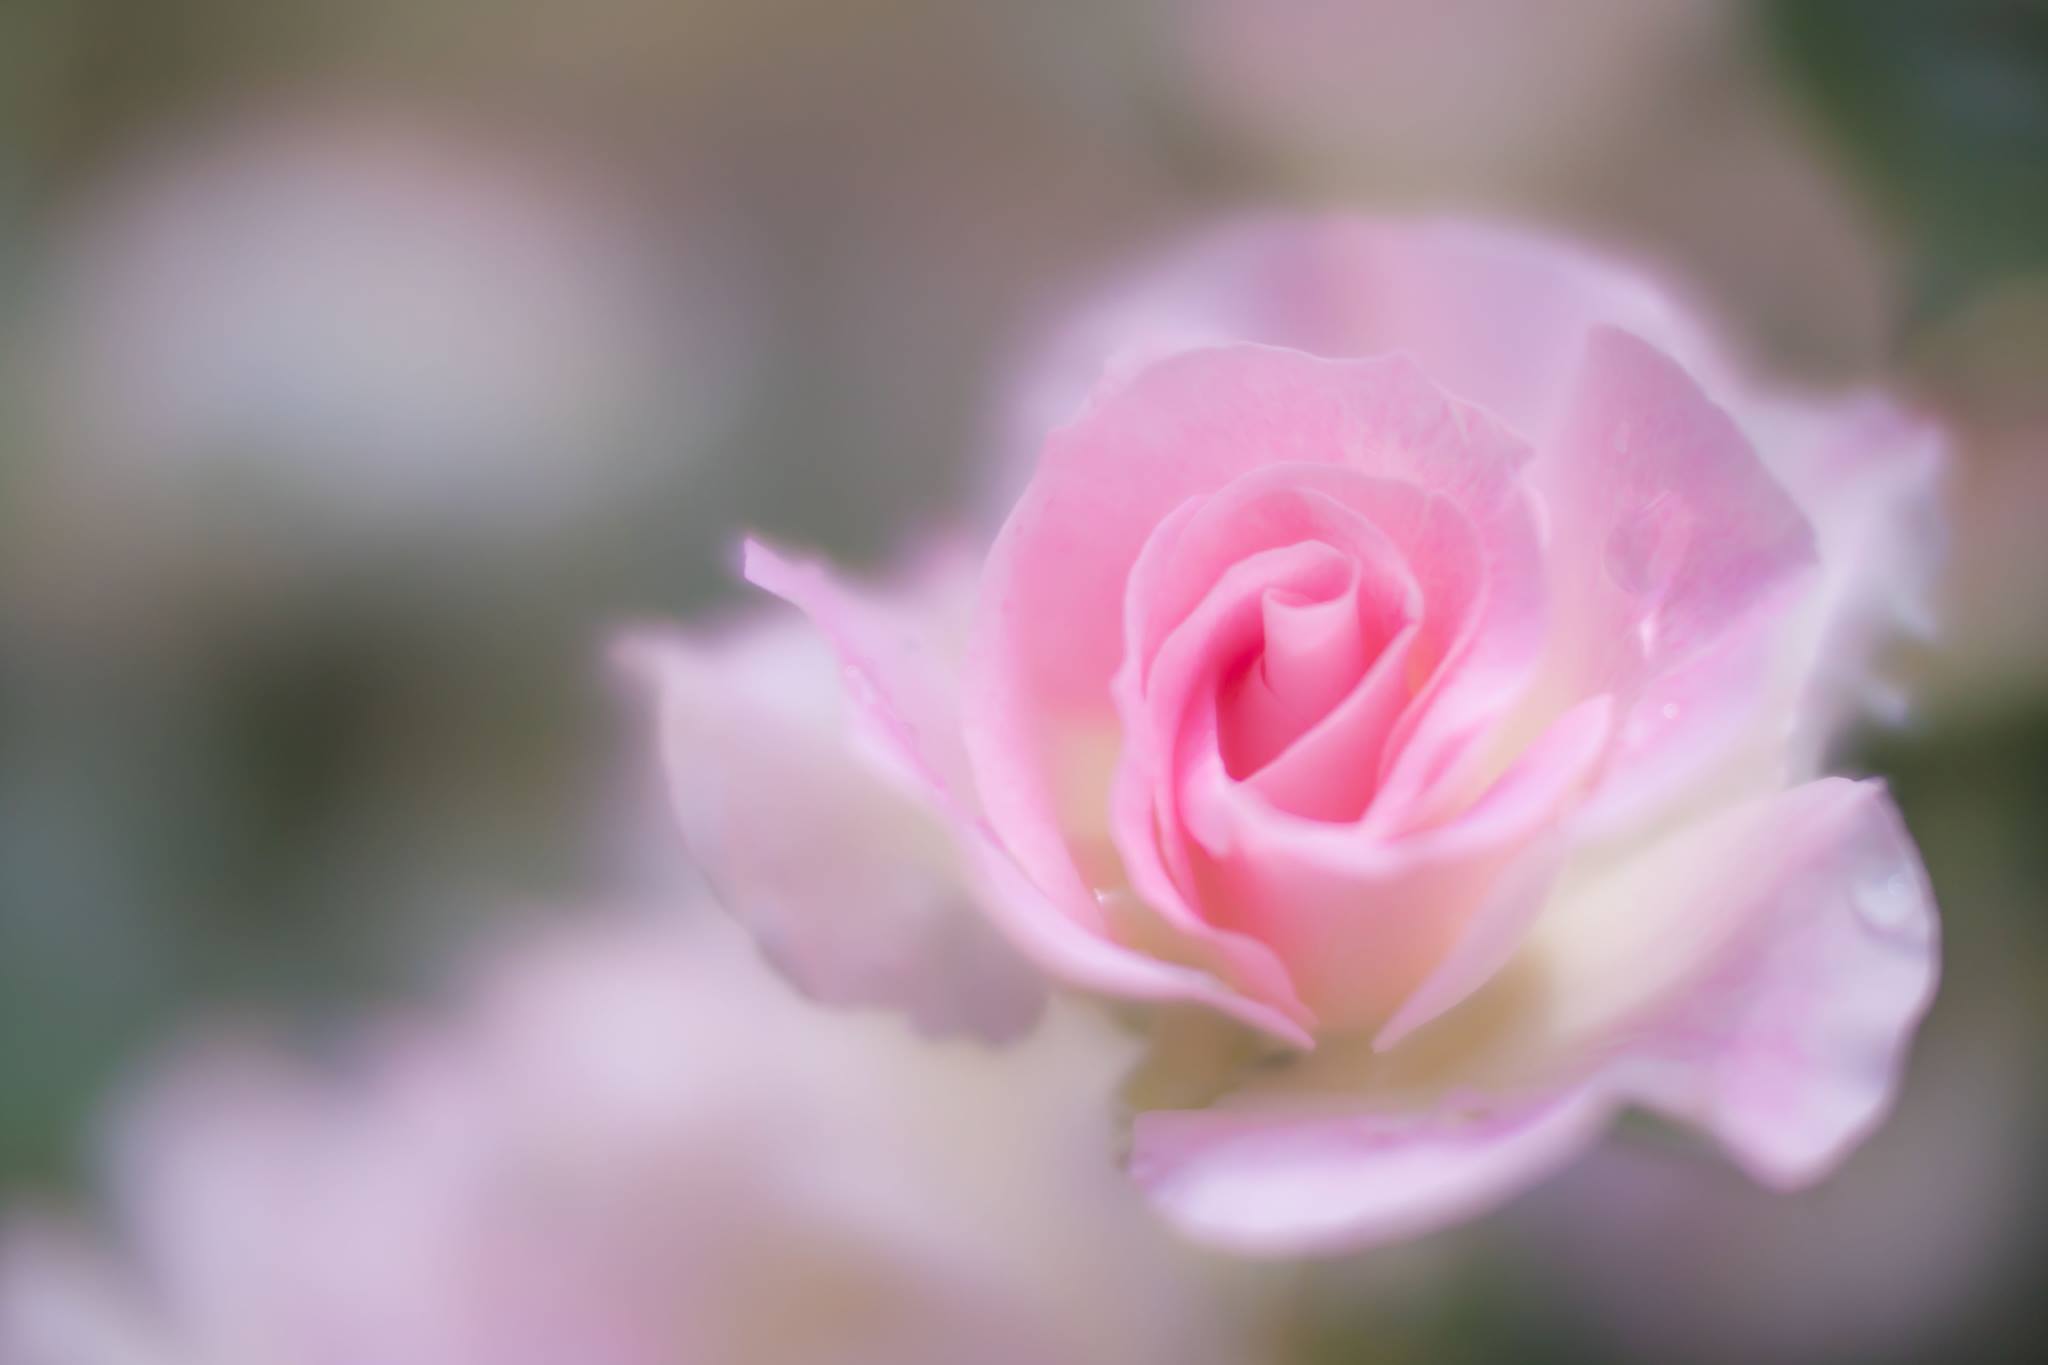 6月29日 土 山田久美夫写真教室フワッとした花を撮る講座 19年夏 株式会社ケンコー トキナーのプレスリリース